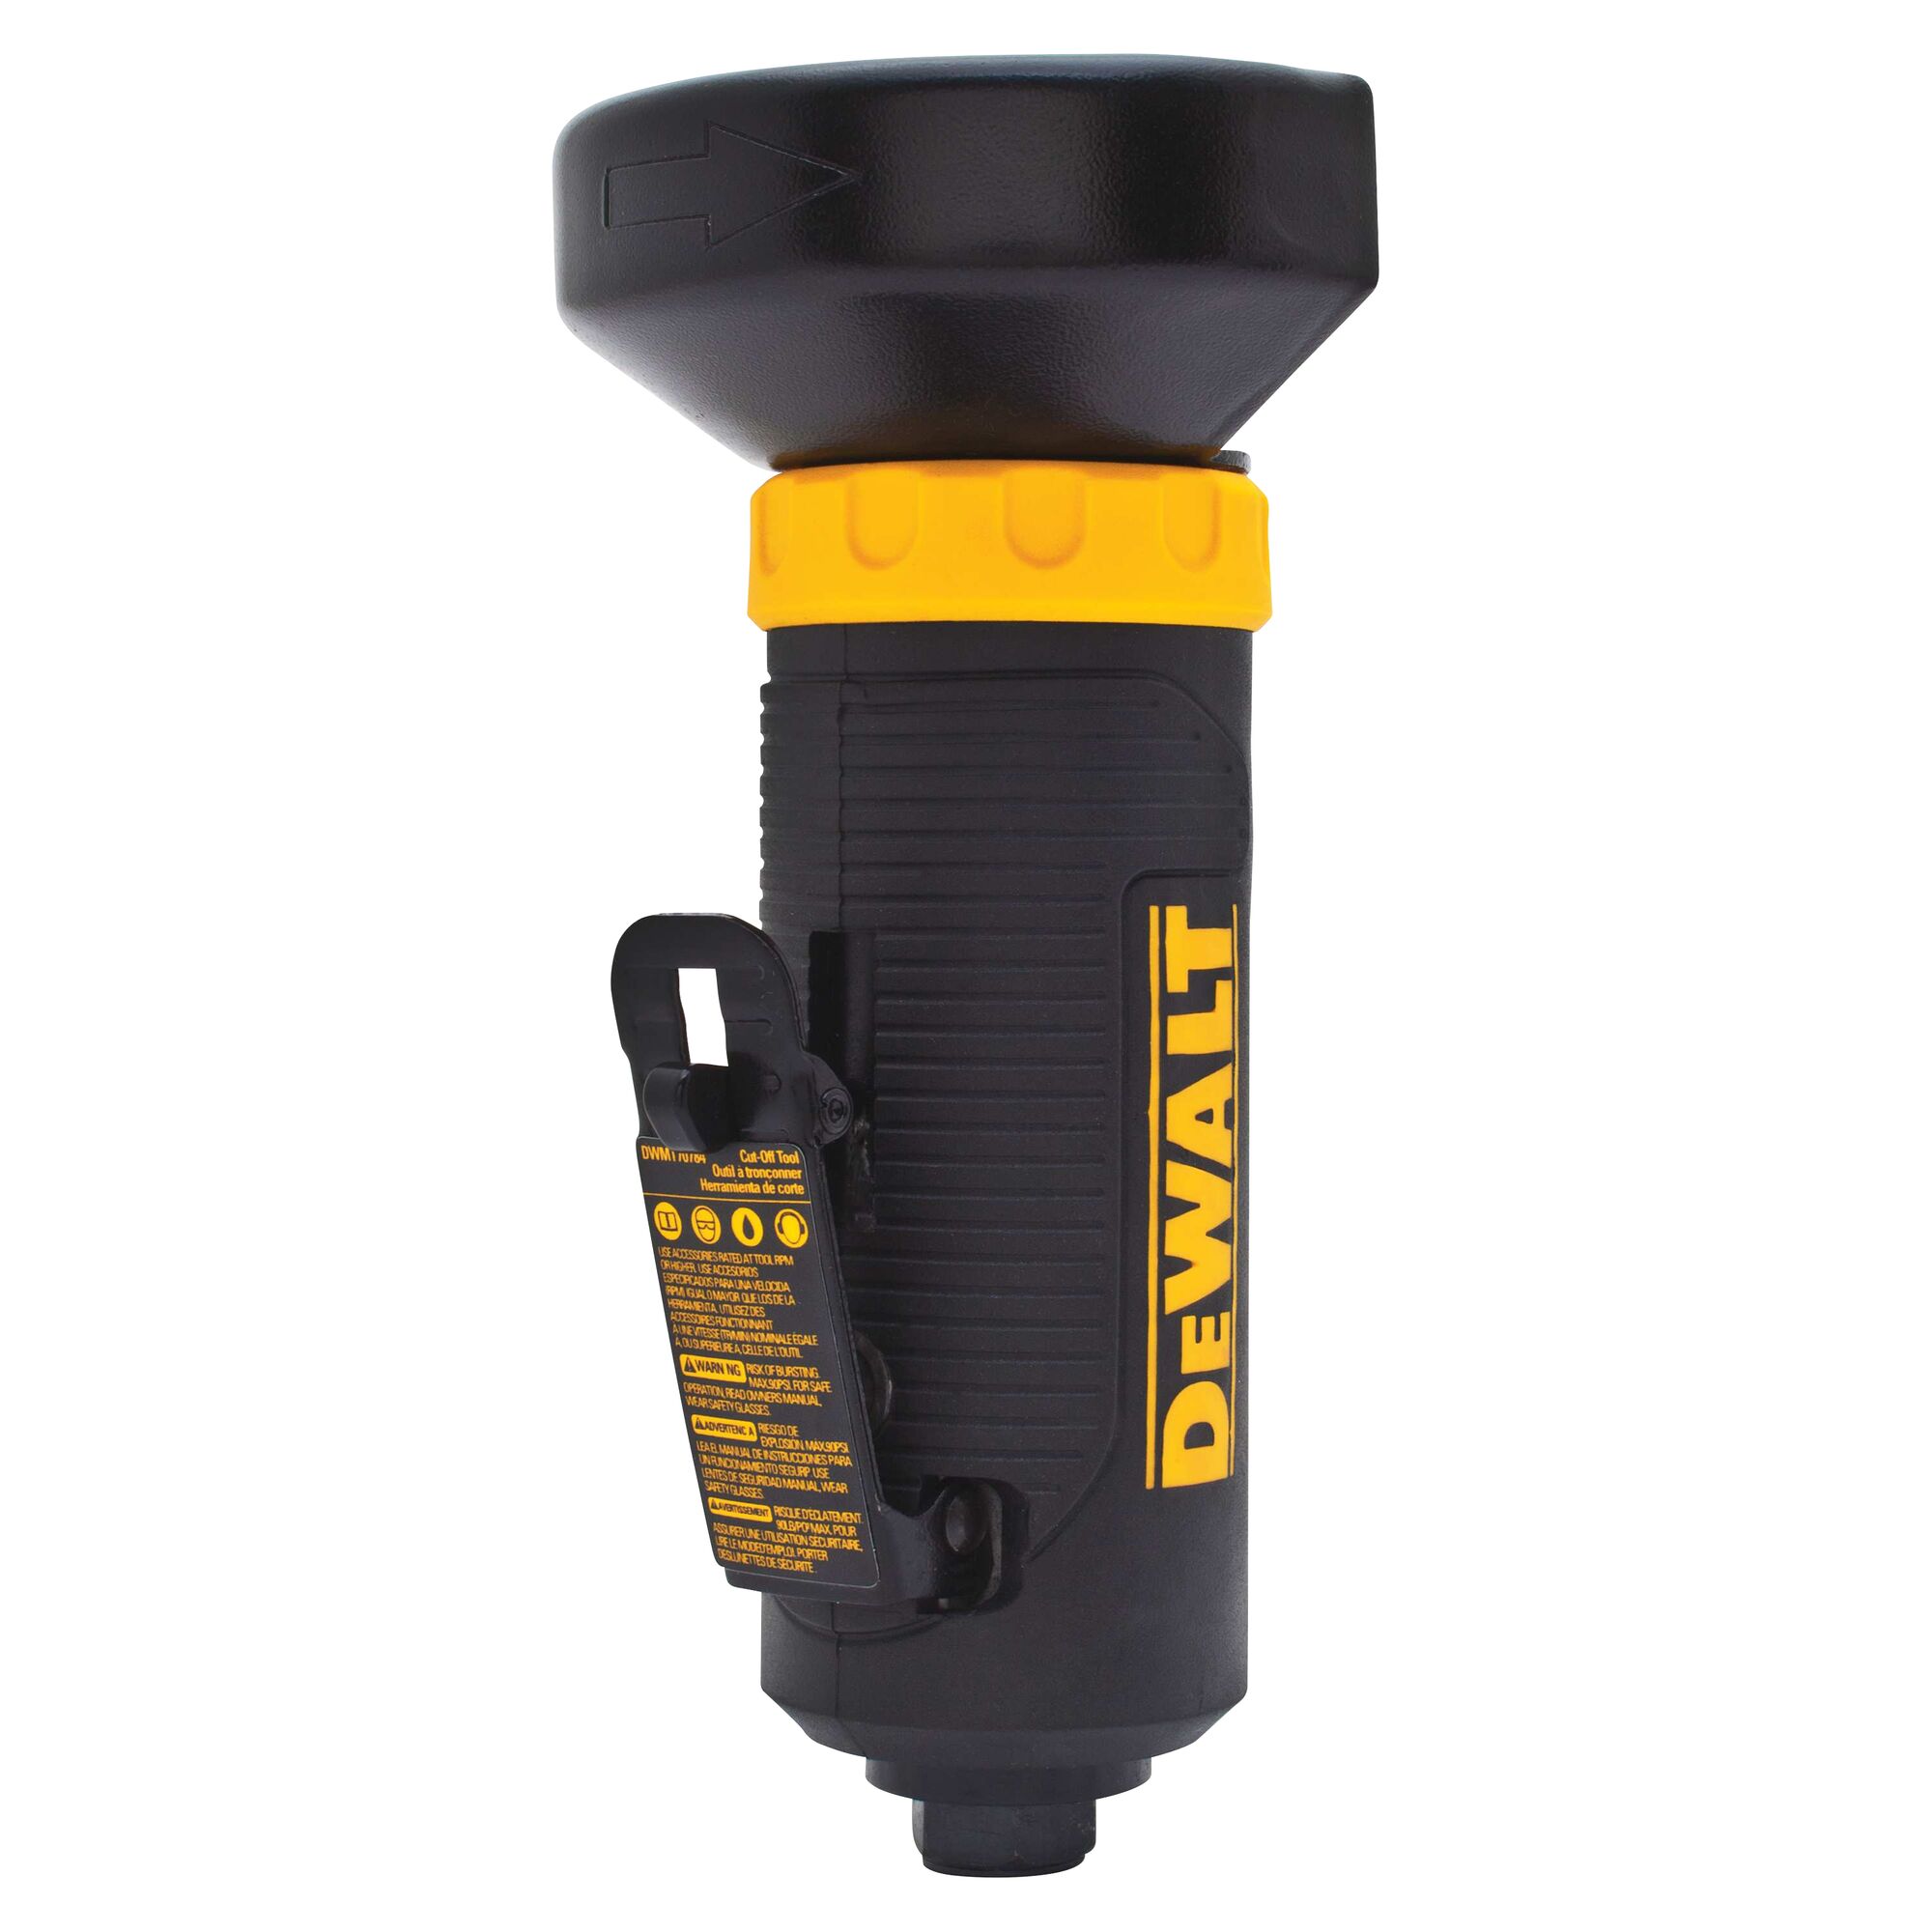 DEWALT DWMT70784 Cut-Off Tool Angle Grinder for sale online 